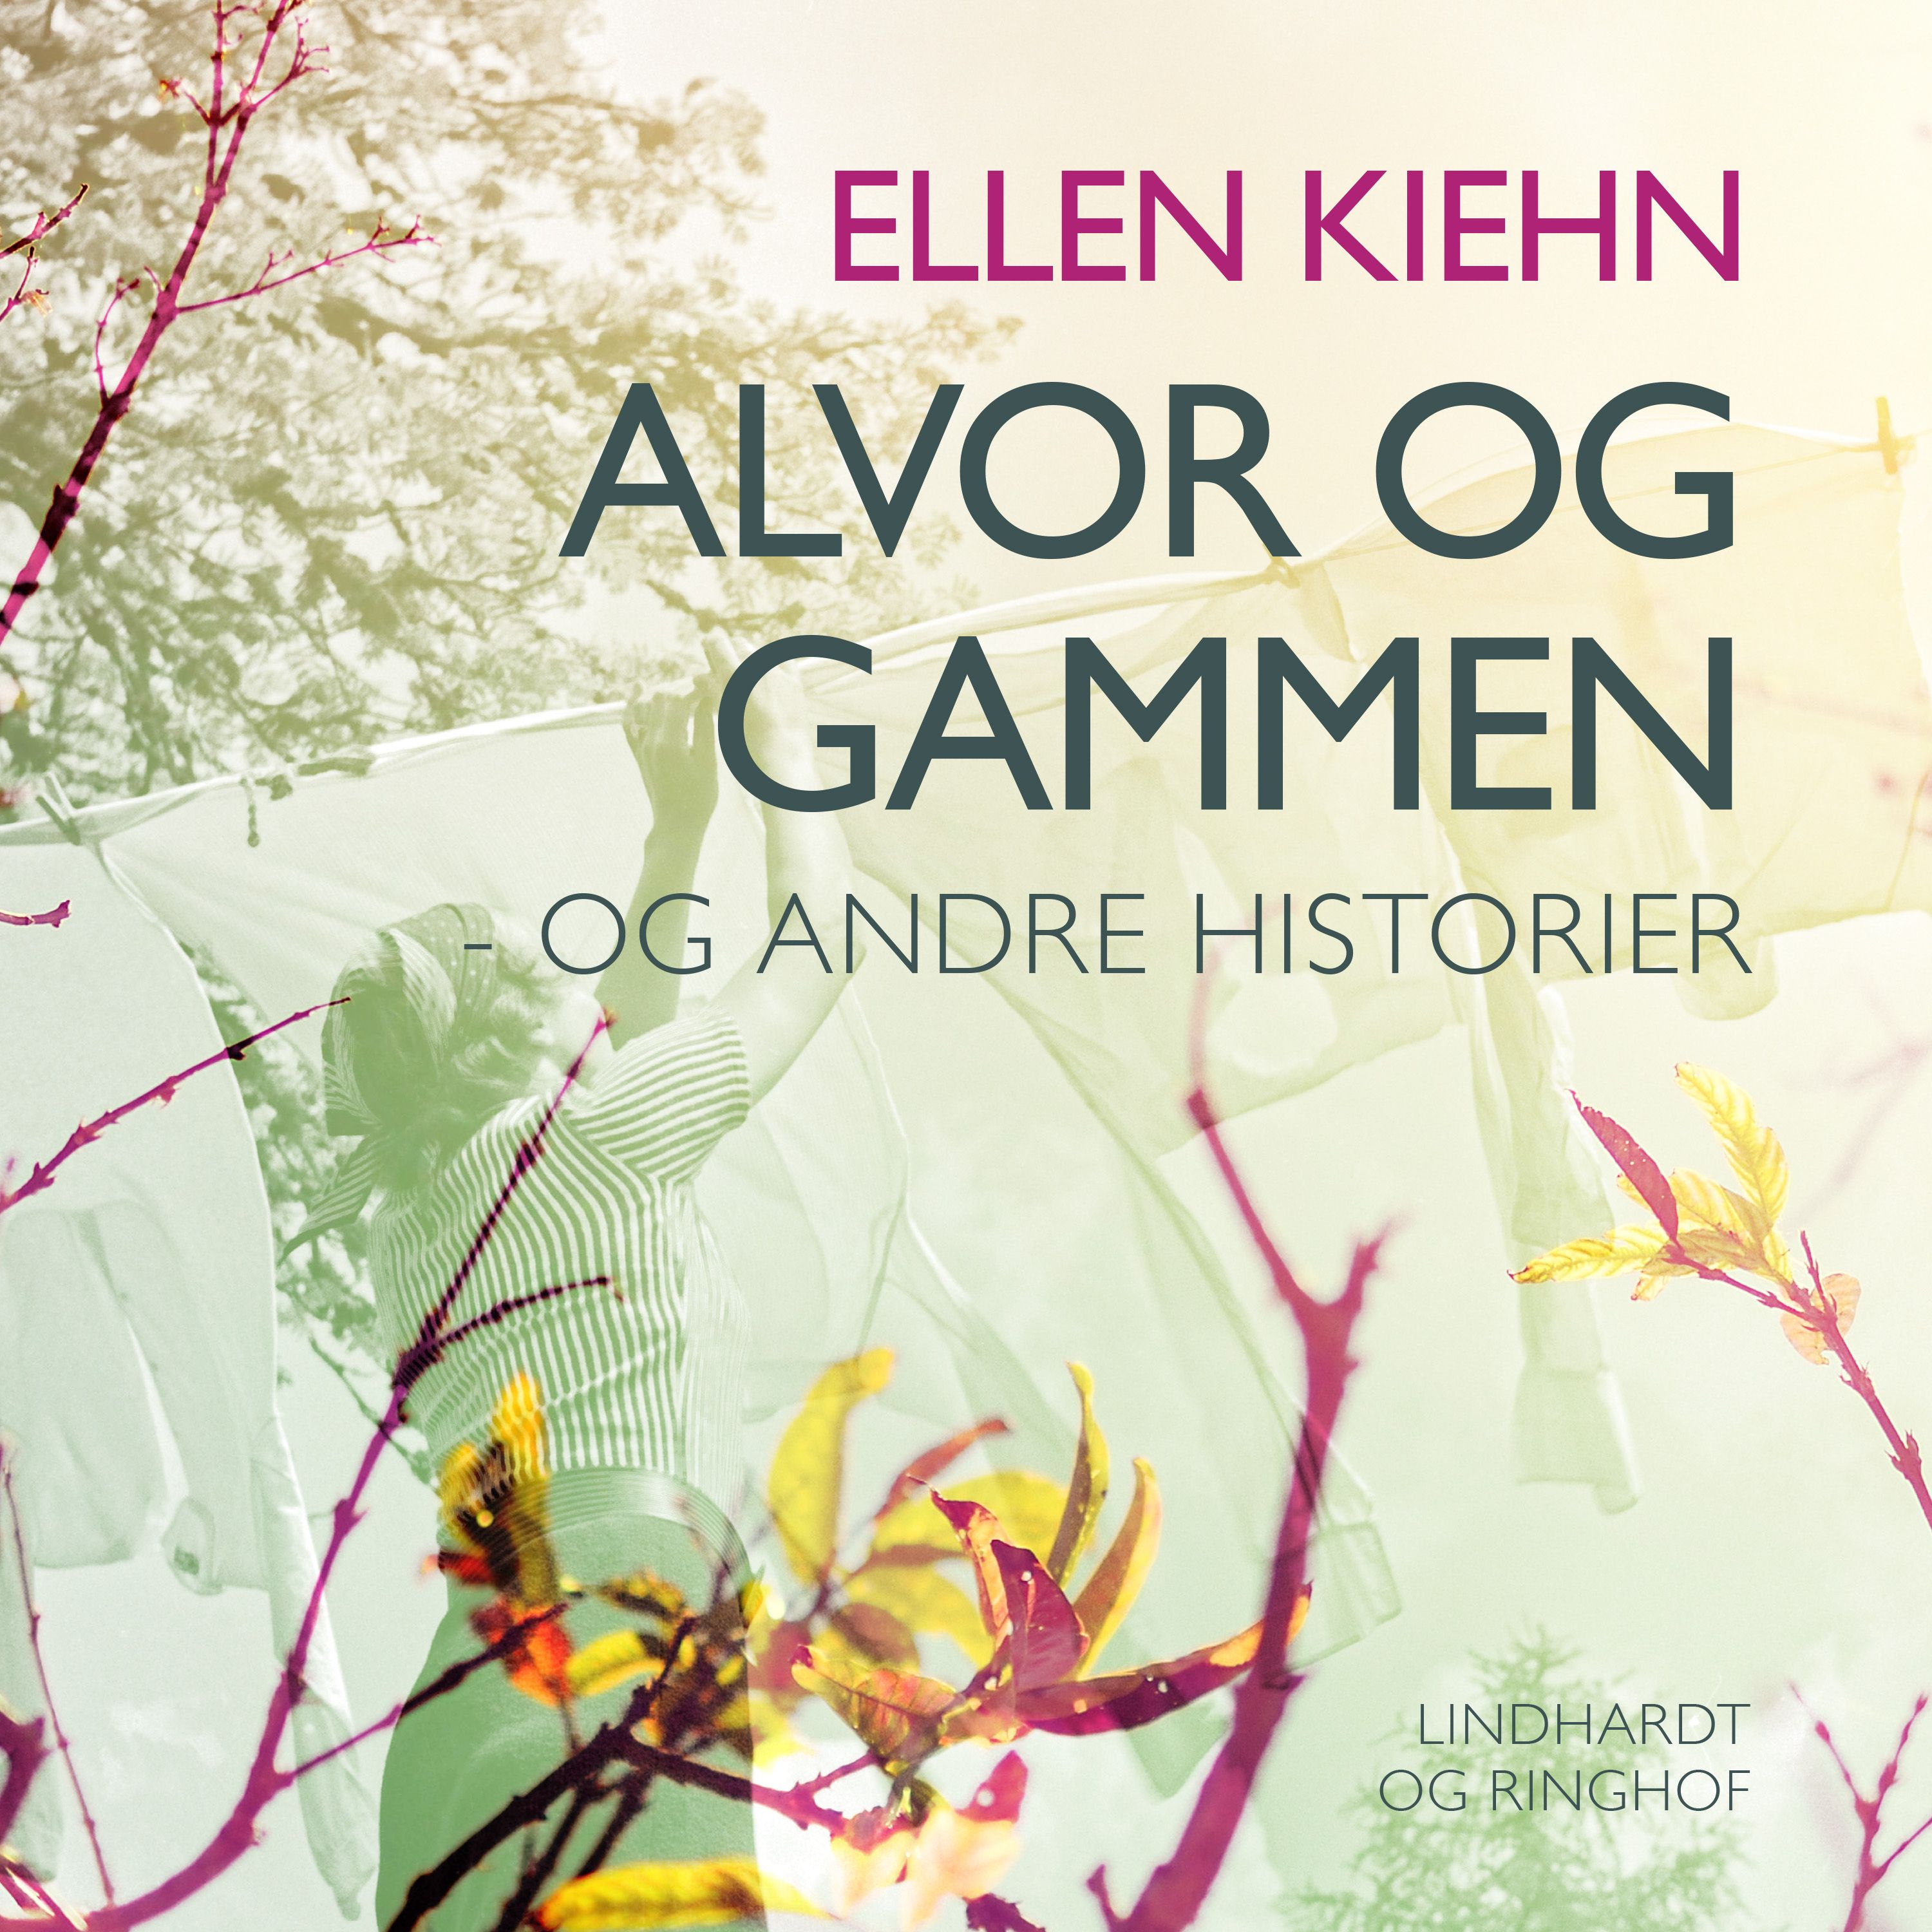 Alvor og gammen - og andre historier, ljudbok av Ellen Kiehn